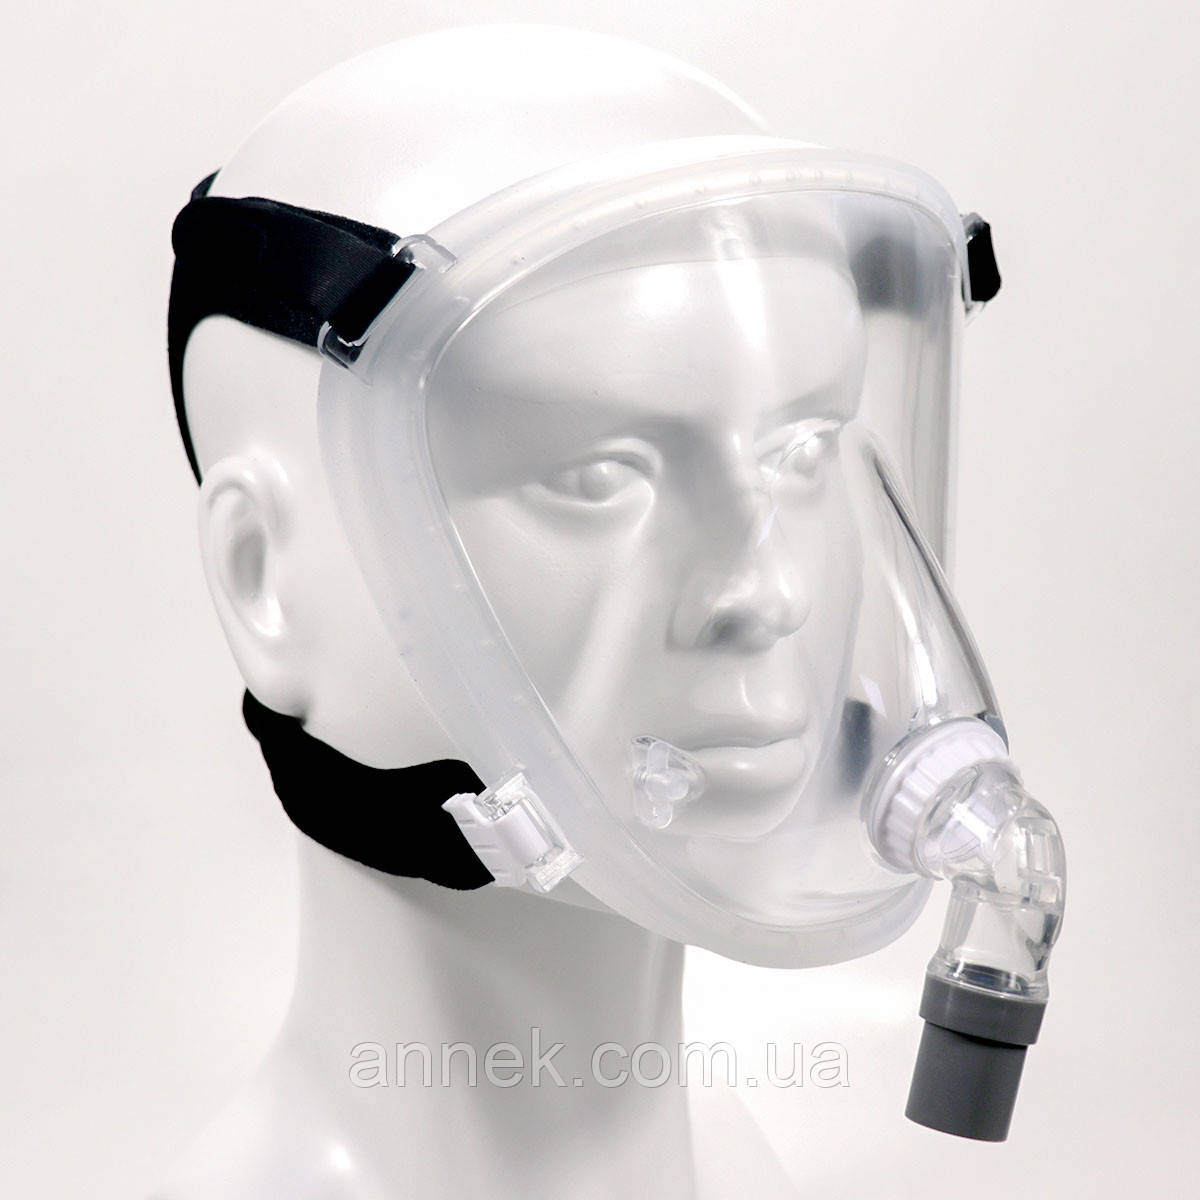 Сипап маска повнолицева для ІВЛ для СІПАП терапії та неінвазивної вентиляції легень L розмір